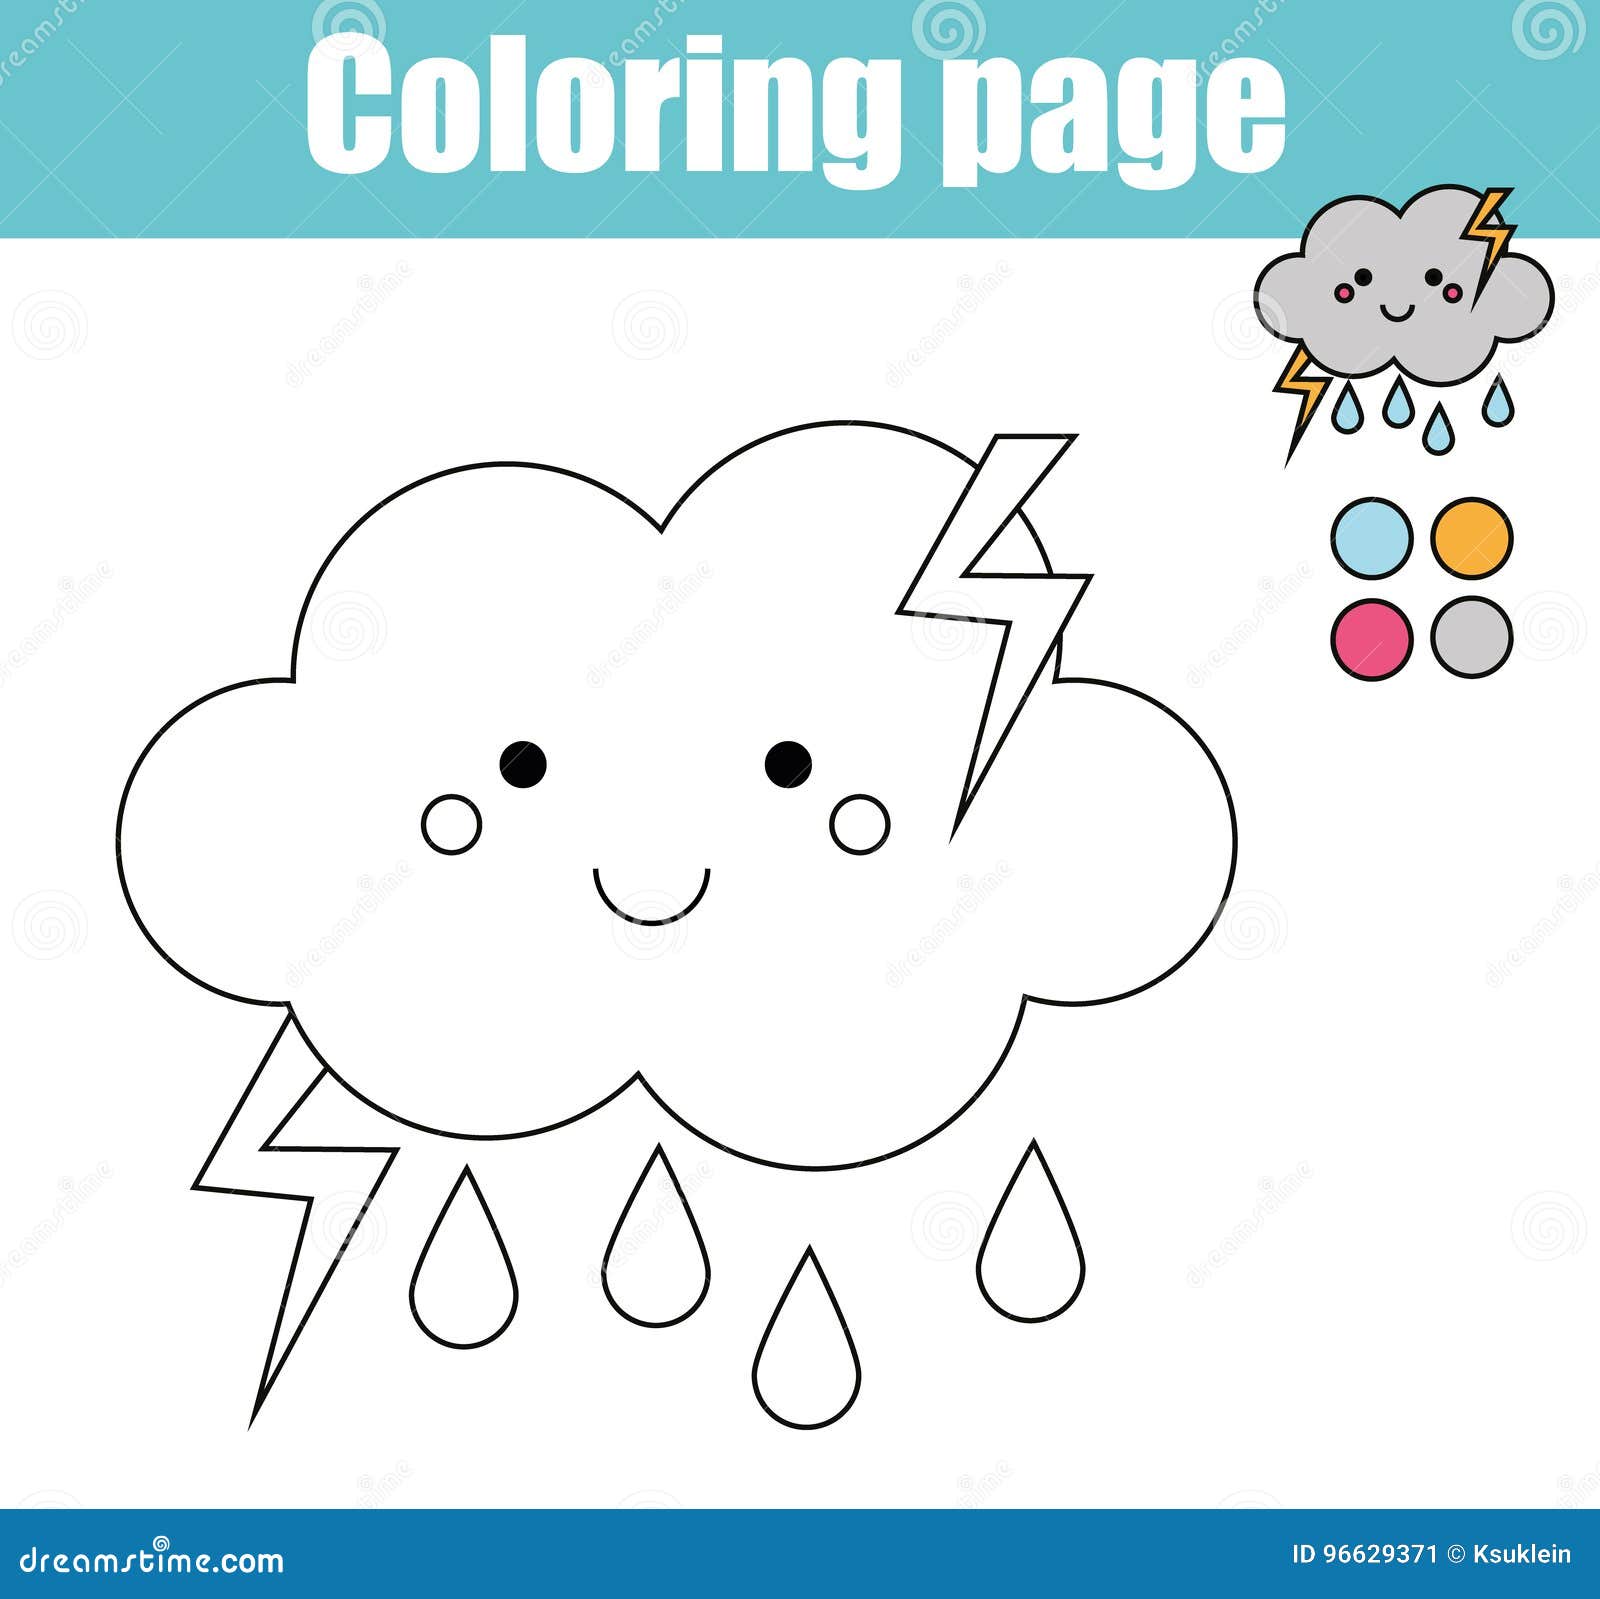 Crianças jogo educativo. Desenho para colorir com bola. Cor por pontos  atividade imprimível imagem vetorial de ksuklein© 281271274